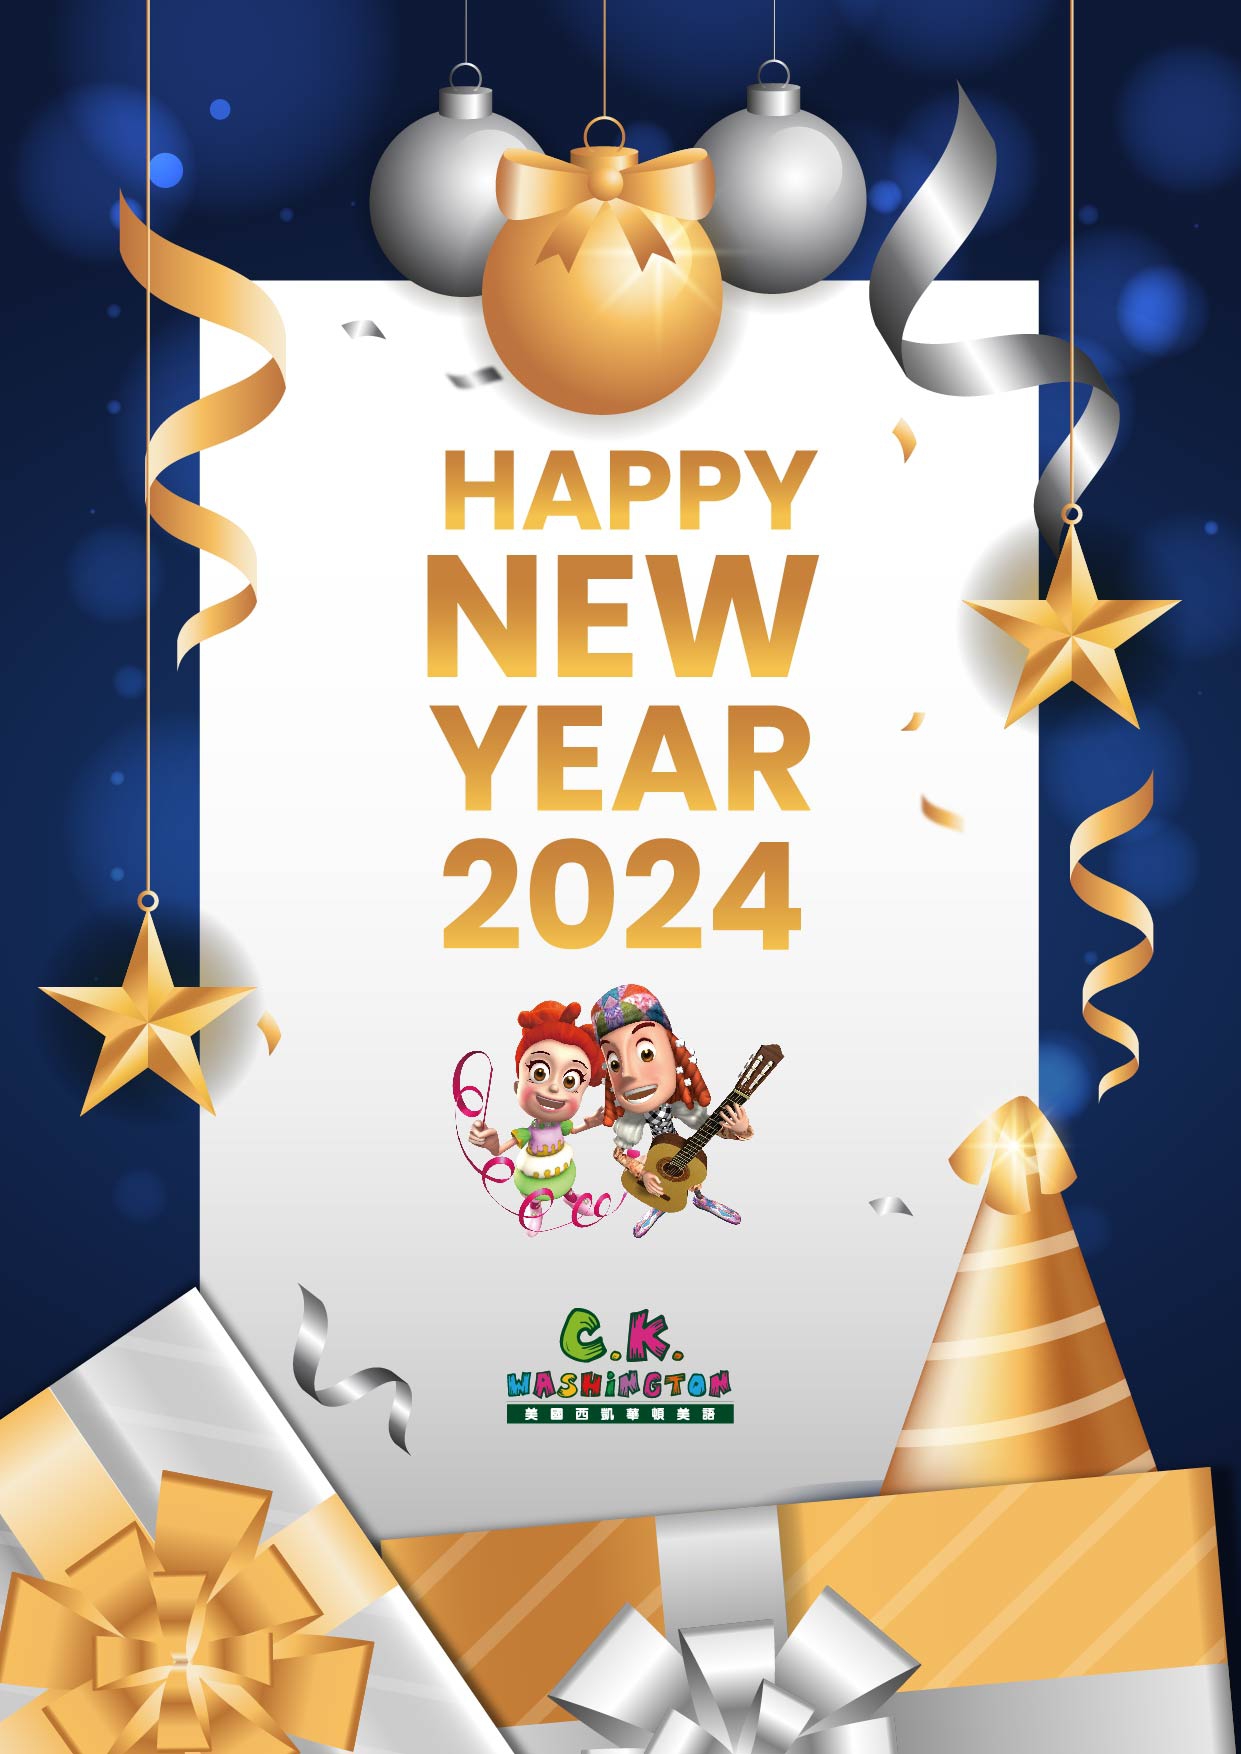 2024 新年快樂!!! Happy New Year~